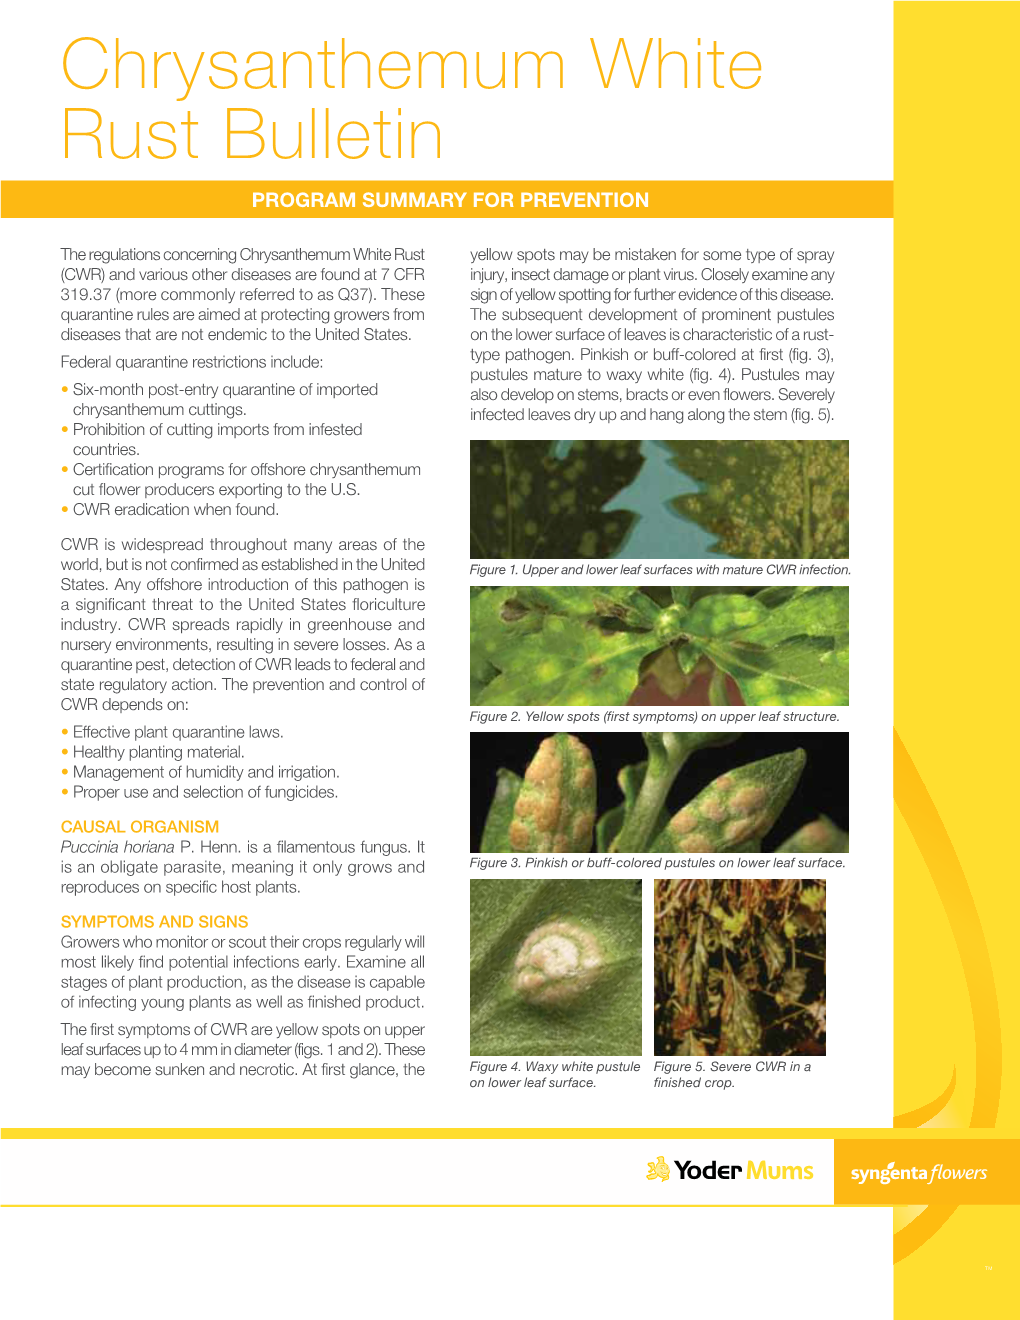 Chrysanthemum White Rust Bulletin Program Summary for Prevention